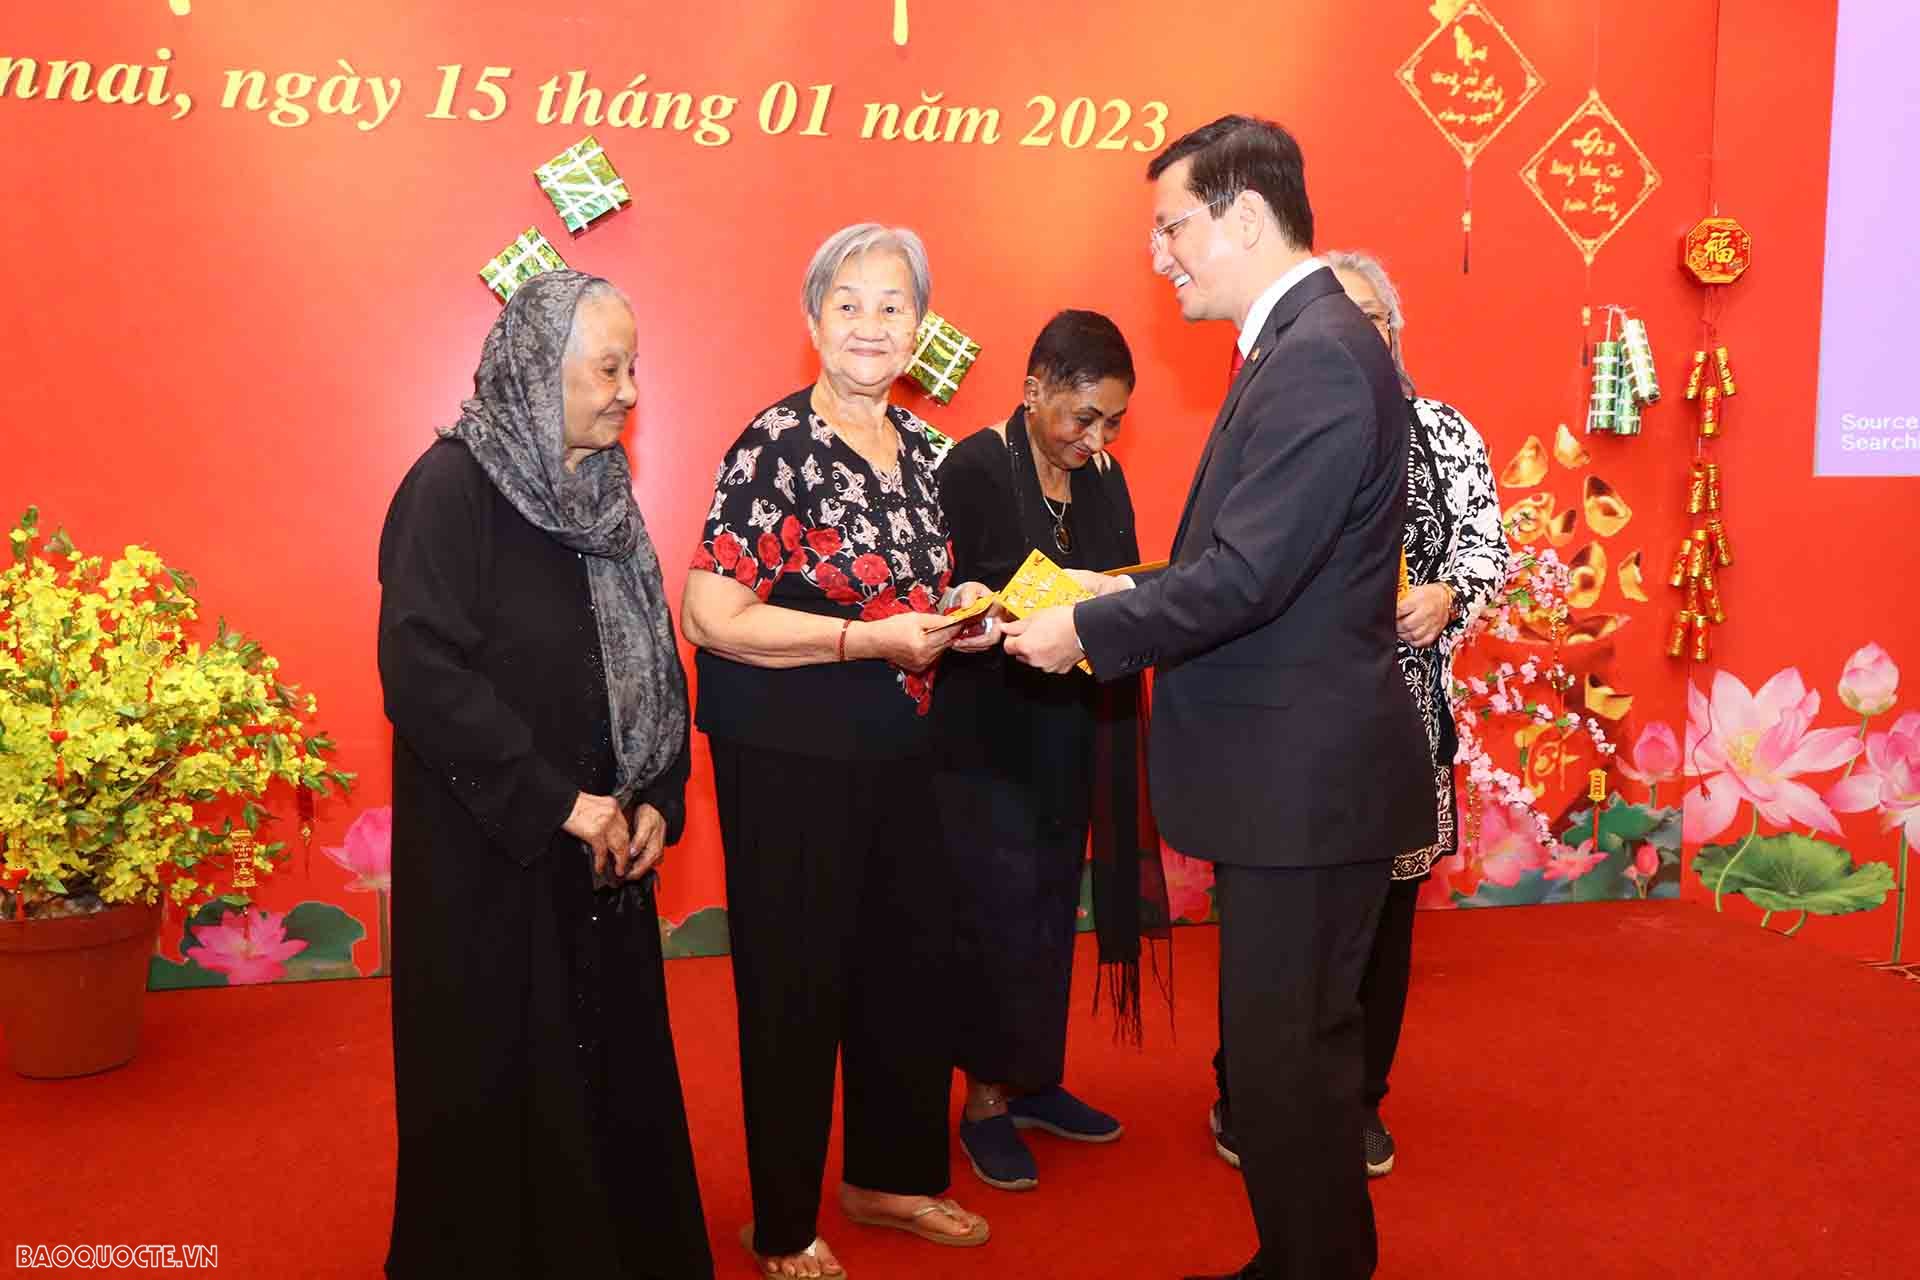 Đại sứ Nguyễn Thanh Hải tặng quà cho người Việt tại Chennai.